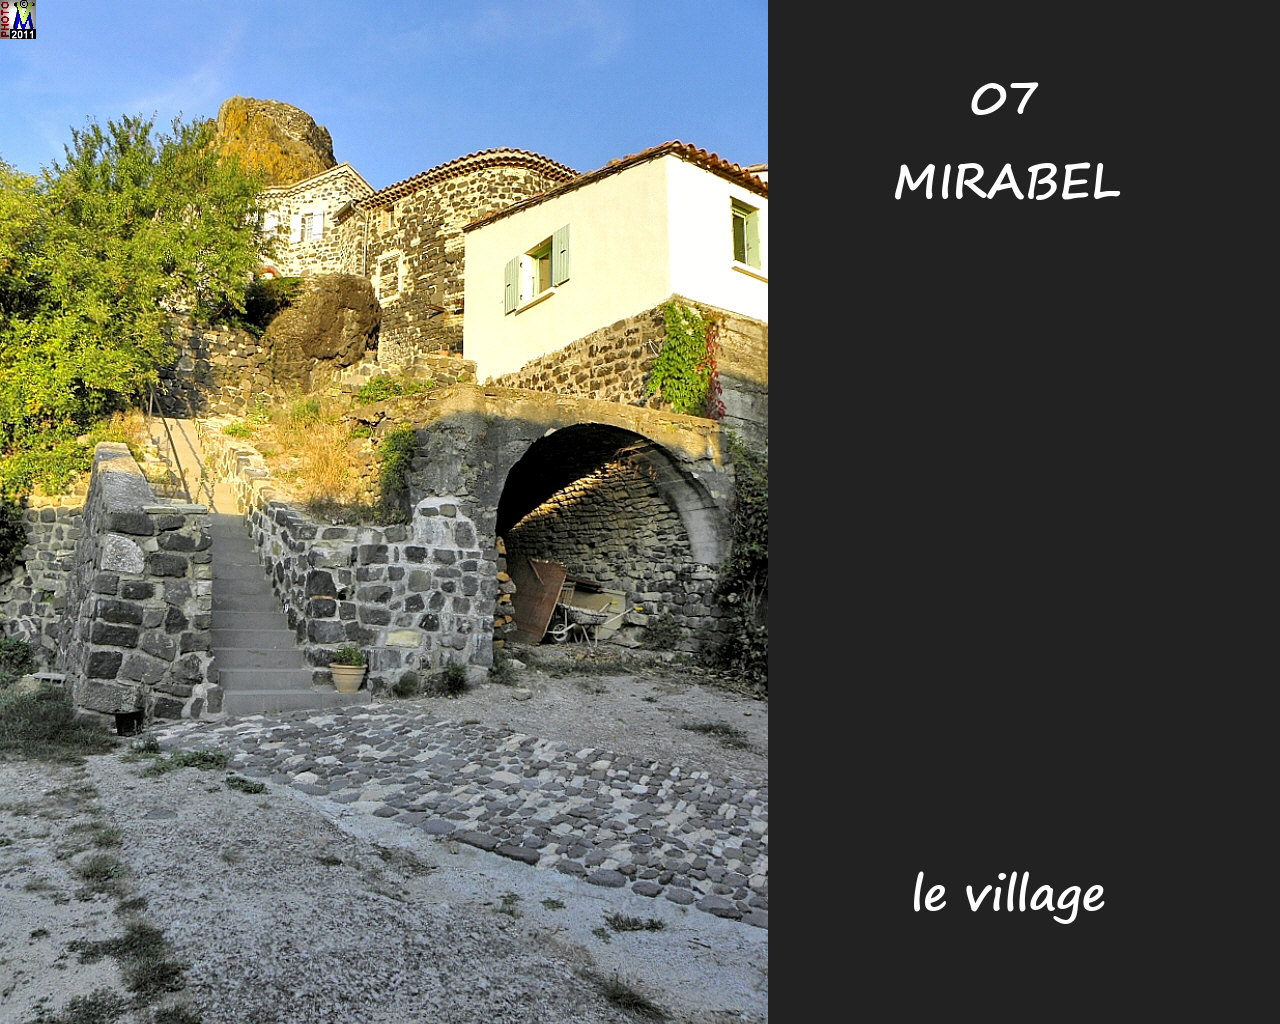 07MIRABEL_village_162.jpg